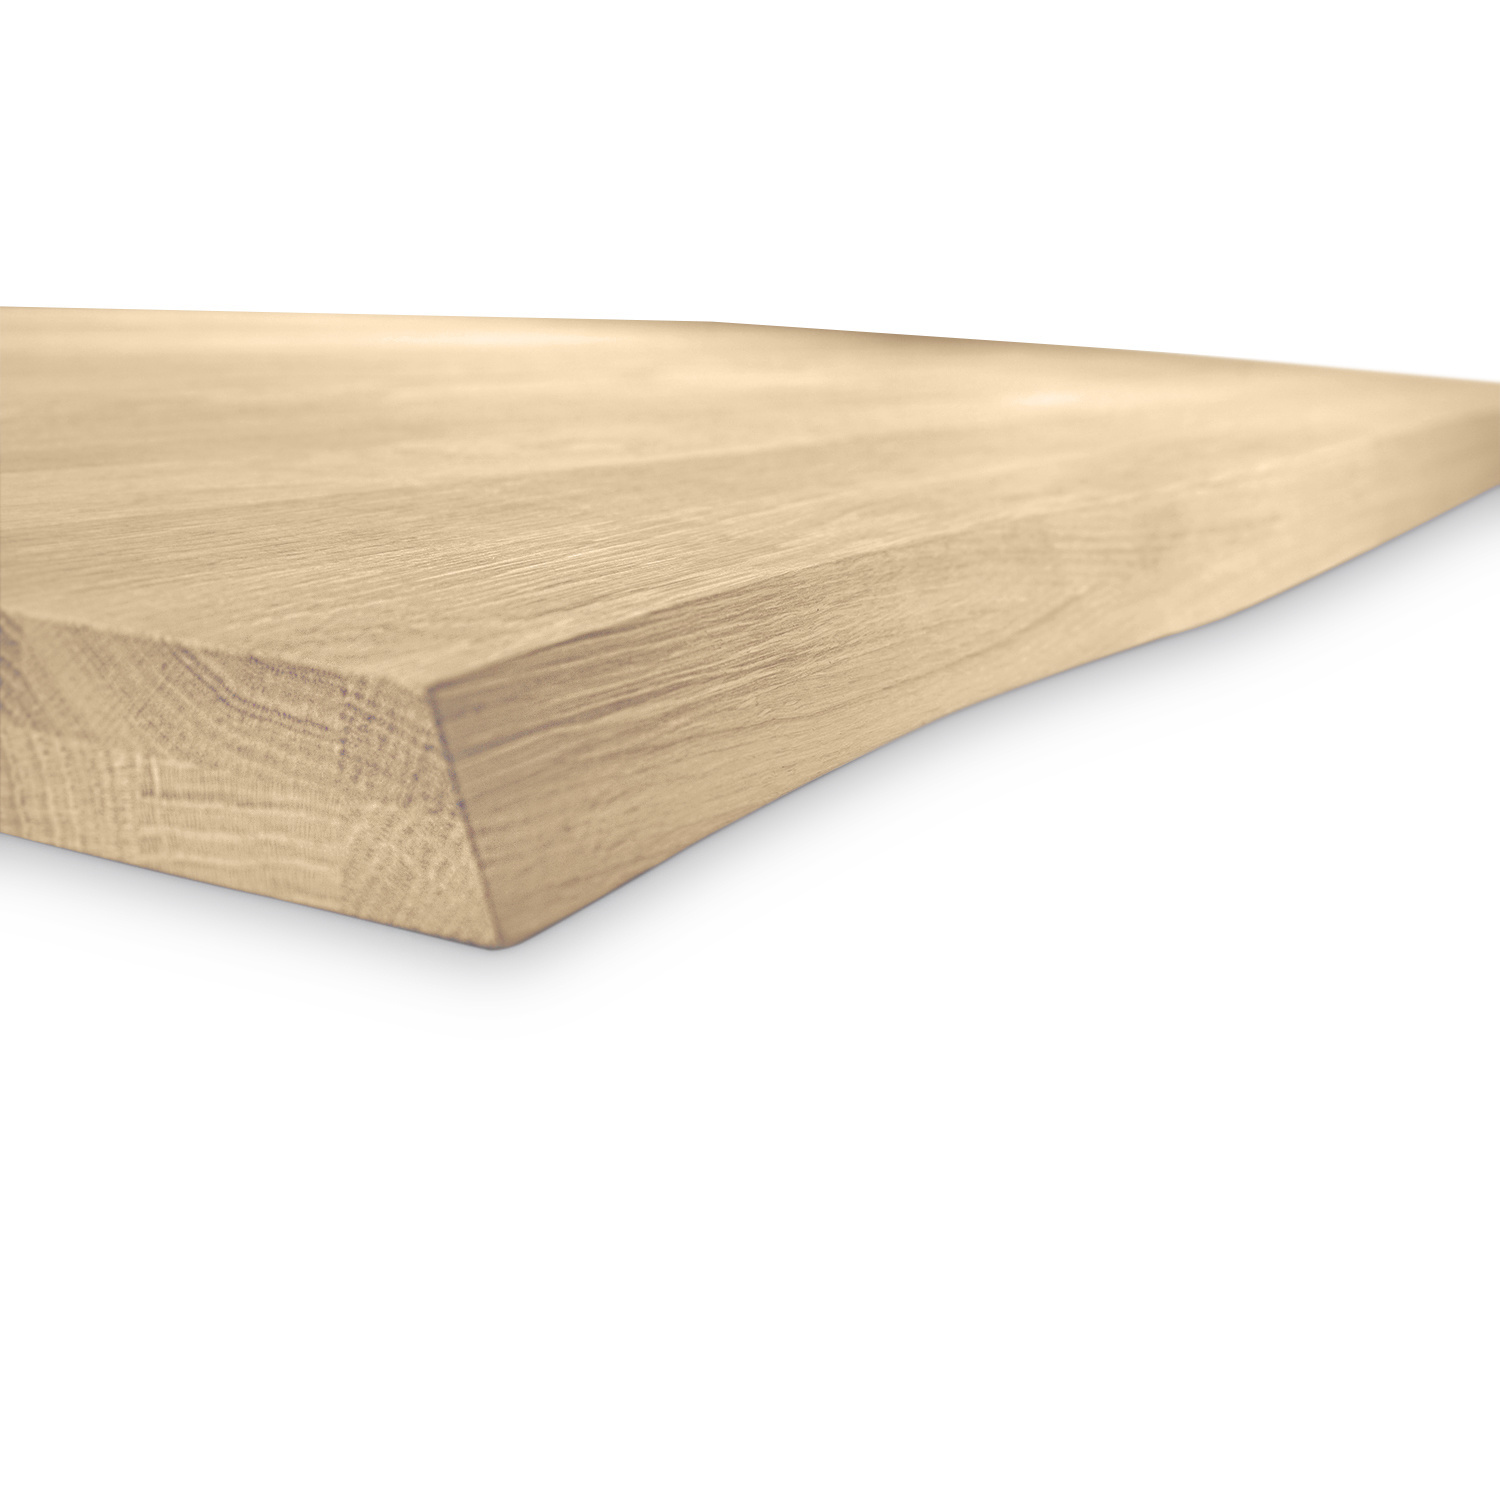  Eiken boomstam tafelblad - 2,7 cm dik (1-laag) - Diverse afmetingen - met boomstam rand / waankant look - rustiek Europees eikenhout - met brede lamellen (circa 10-12 cm) - verlijmd kd 8-12%